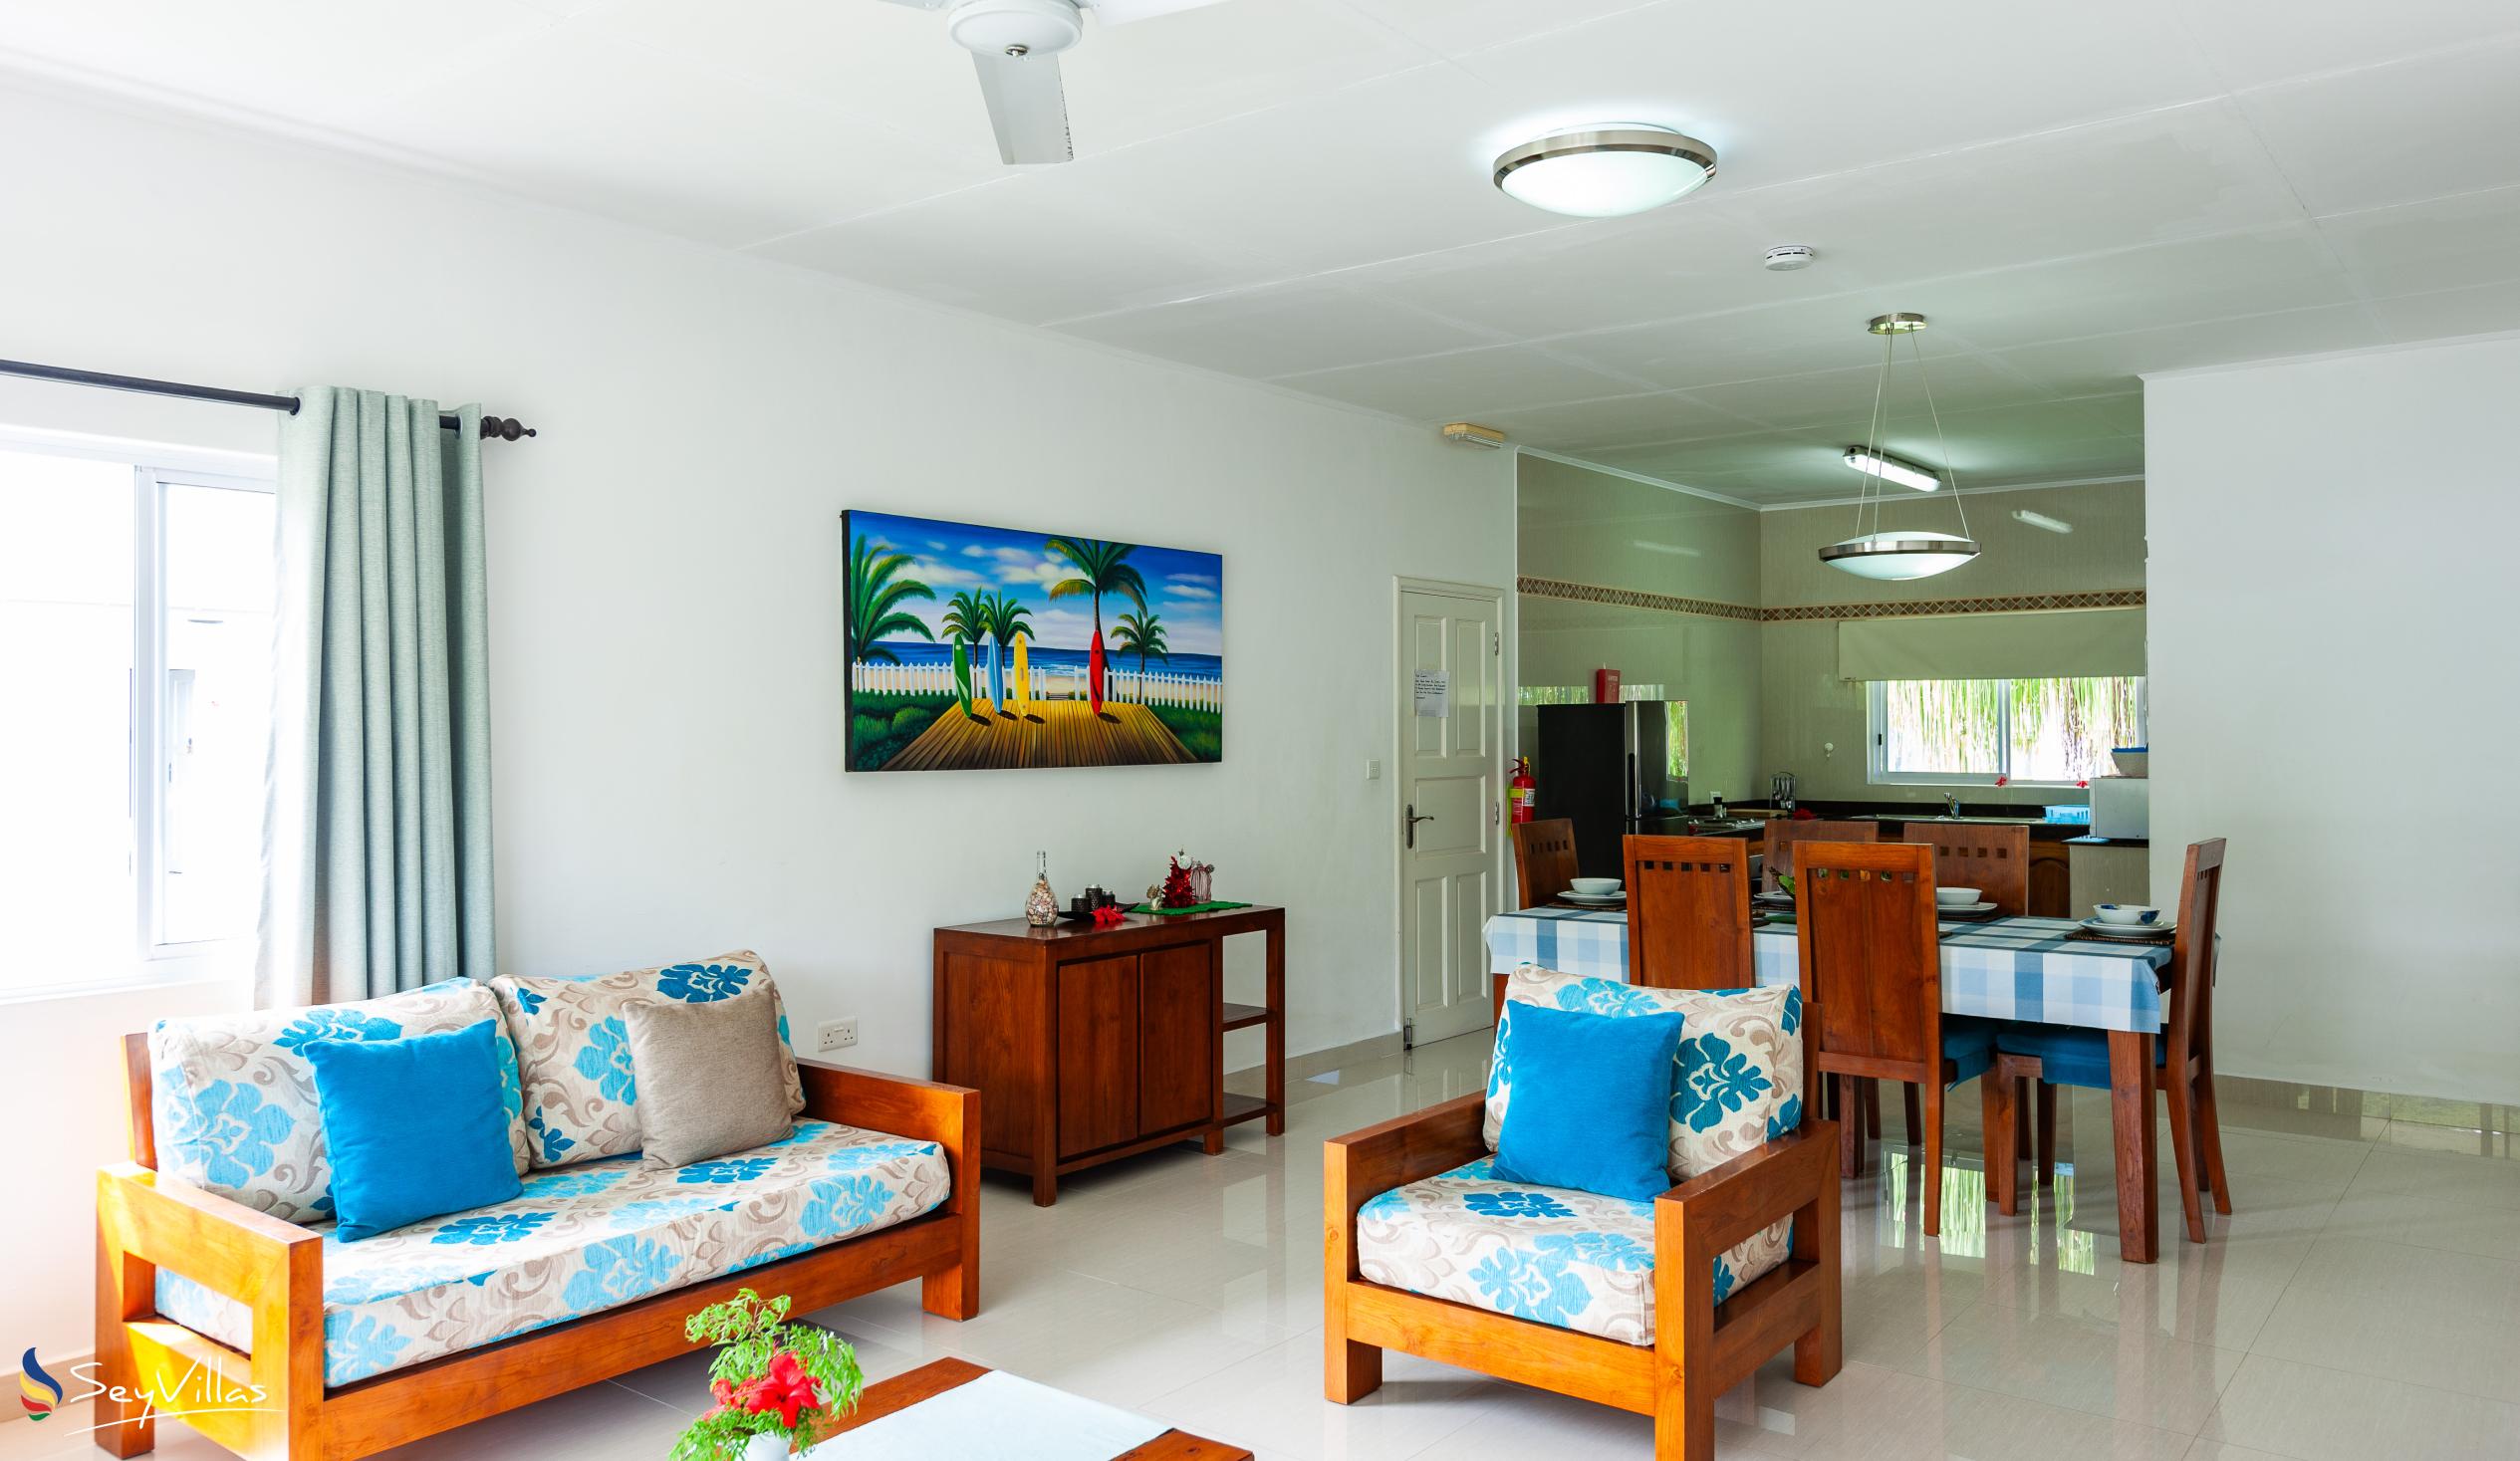 Foto 14: Casa Tara Villas - Appartamento con 2 camere - Praslin (Seychelles)